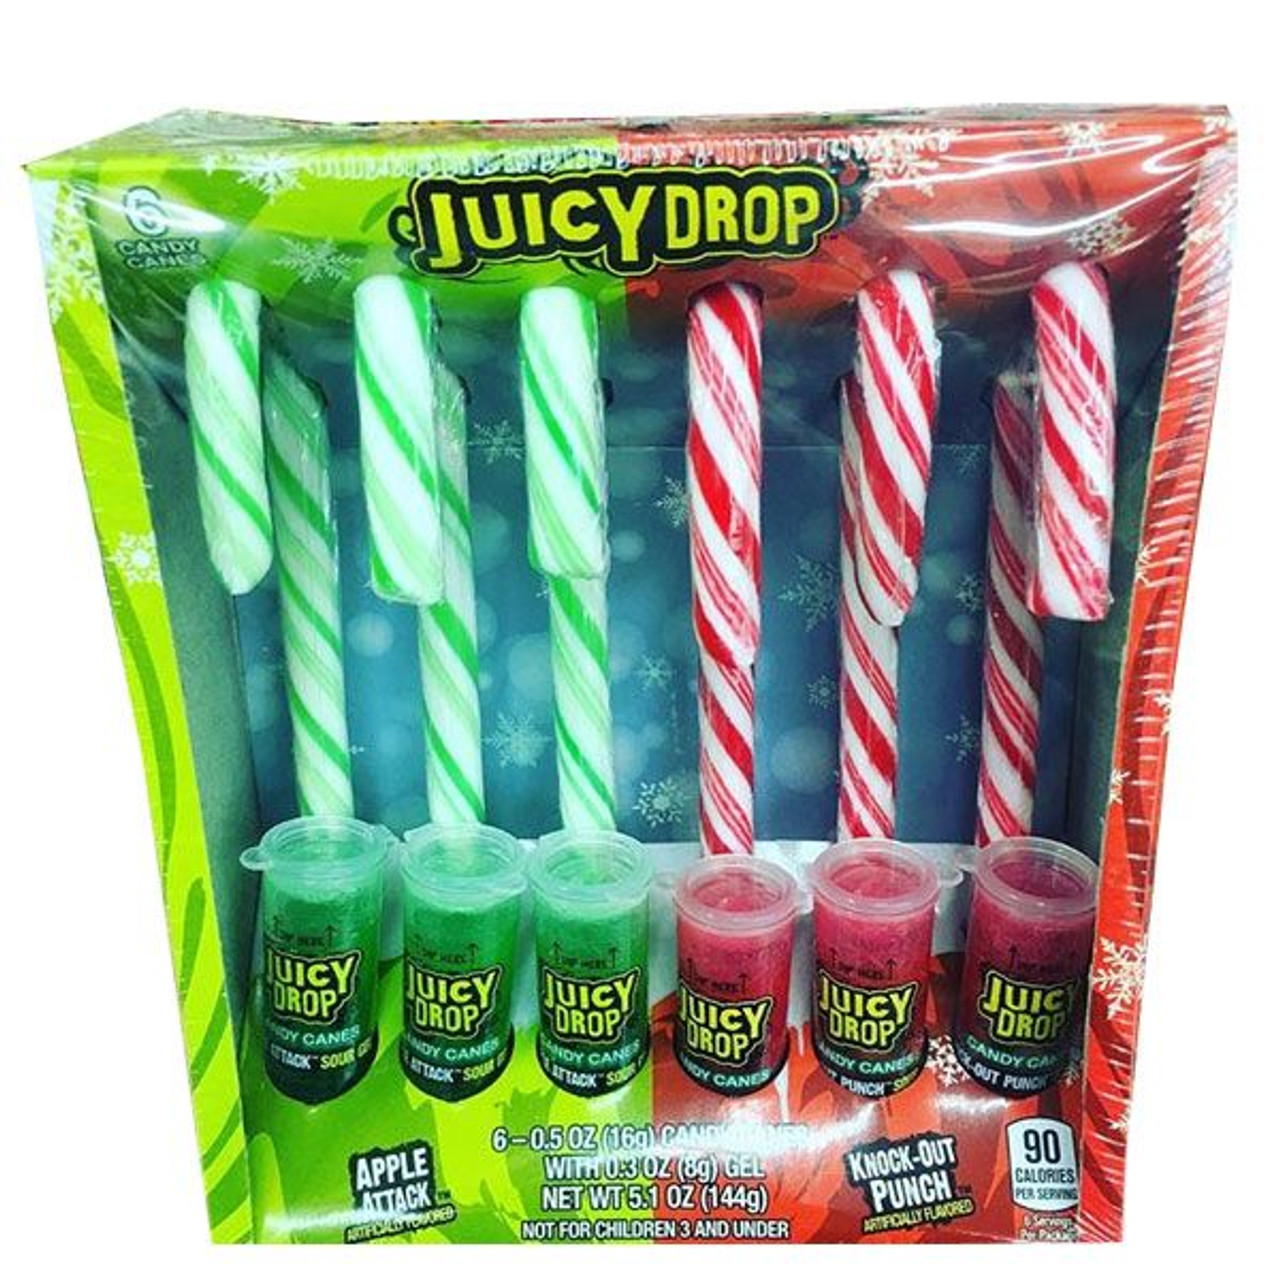 Juicy Drop Pop Canes 6 Count